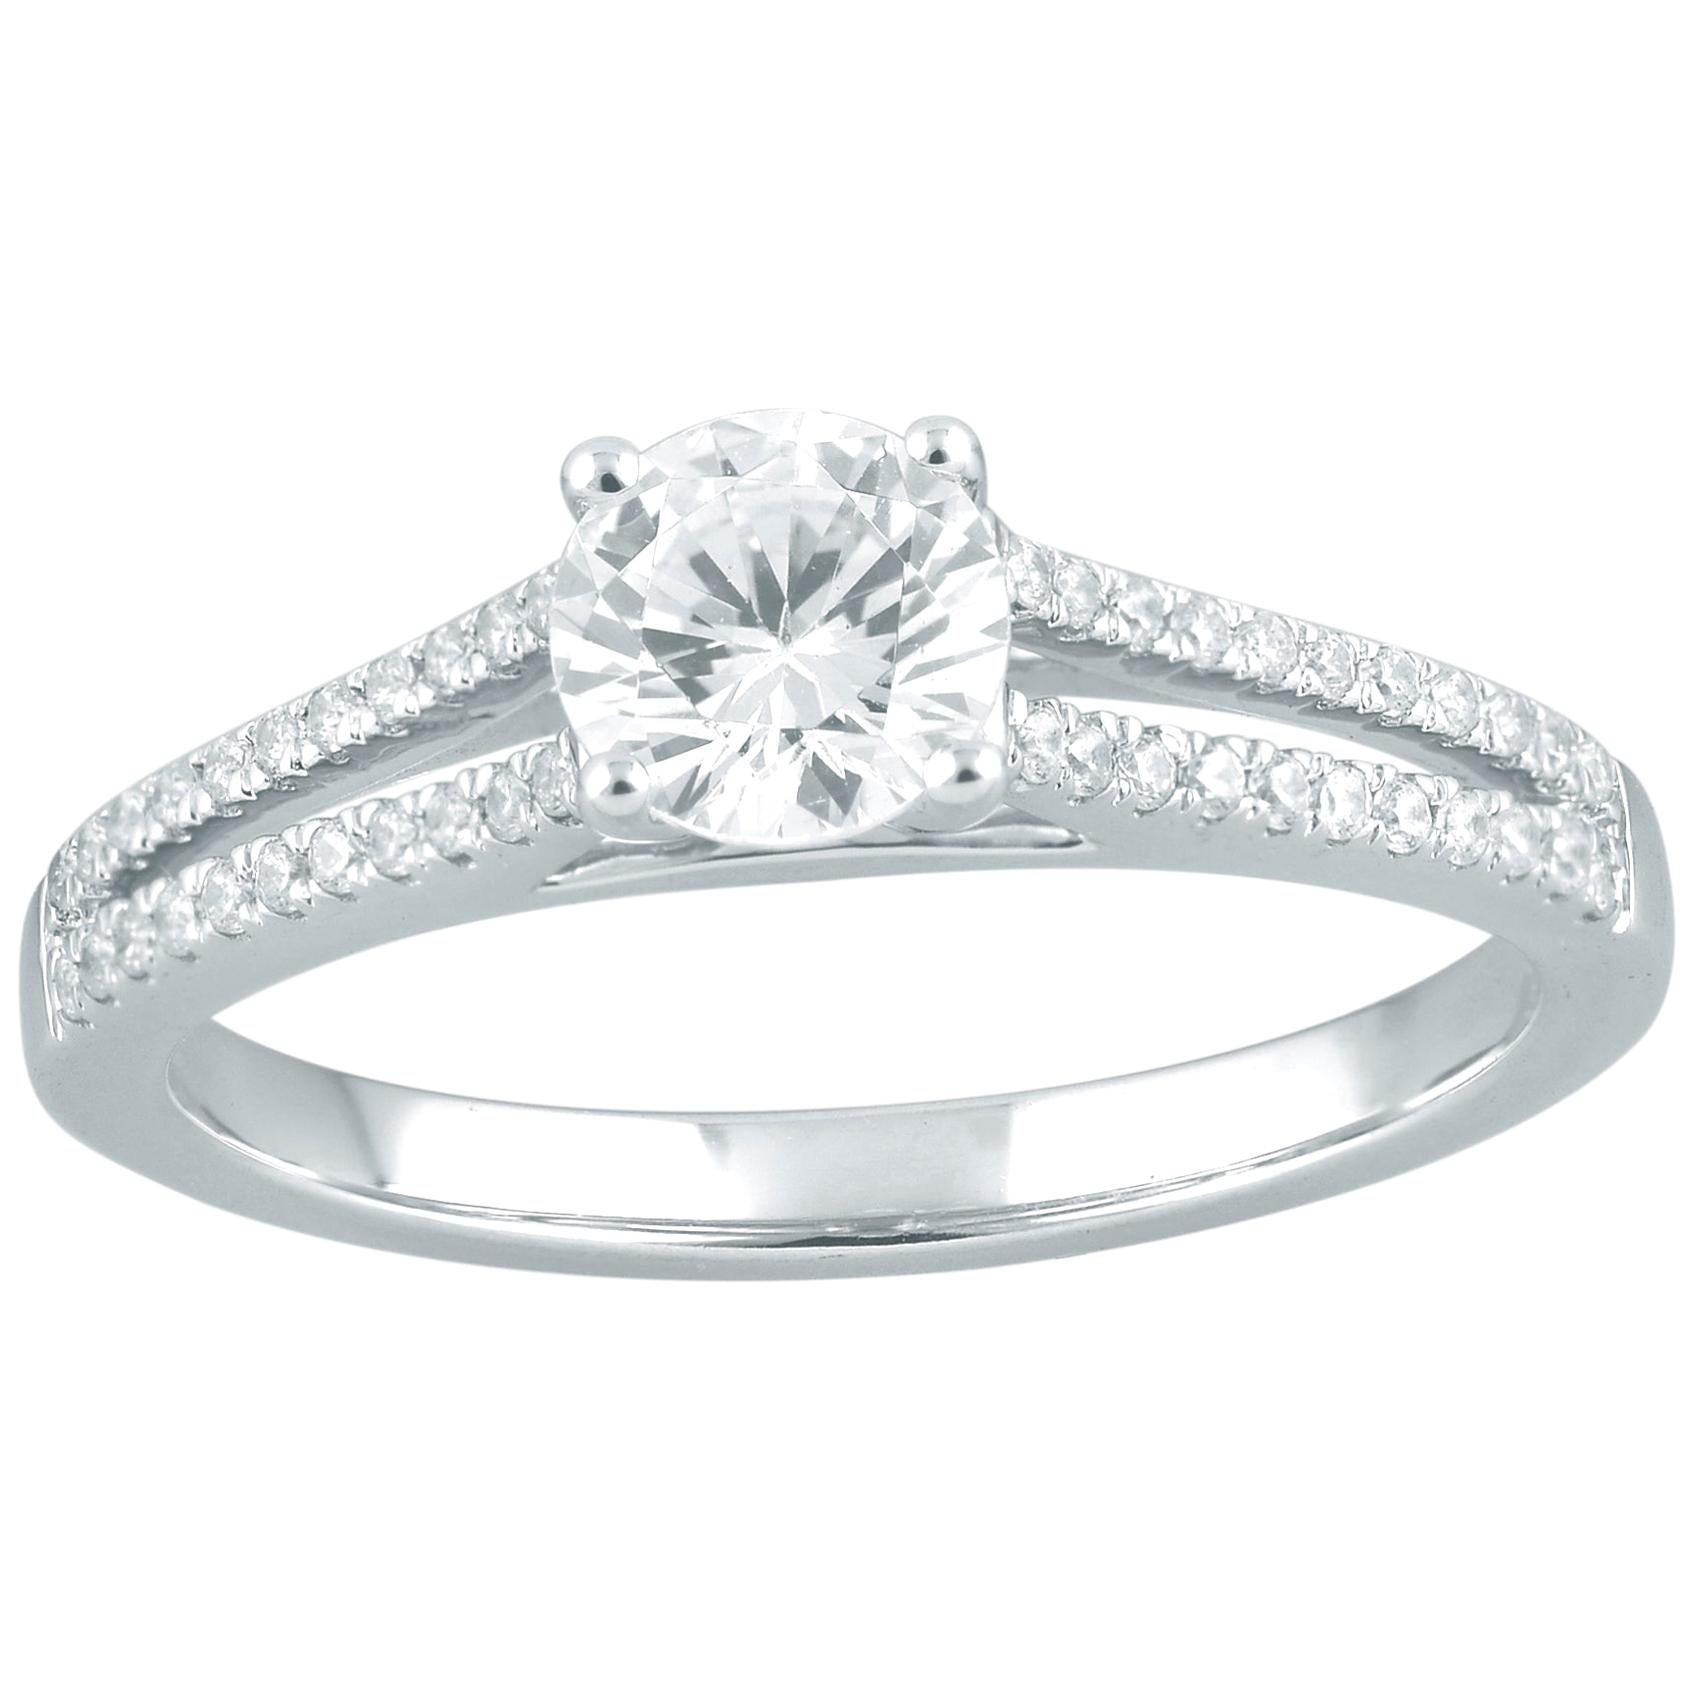 TJD 0.75 Carat Round Diamond 18 Karat White Gold Split Shank Engagement Ring